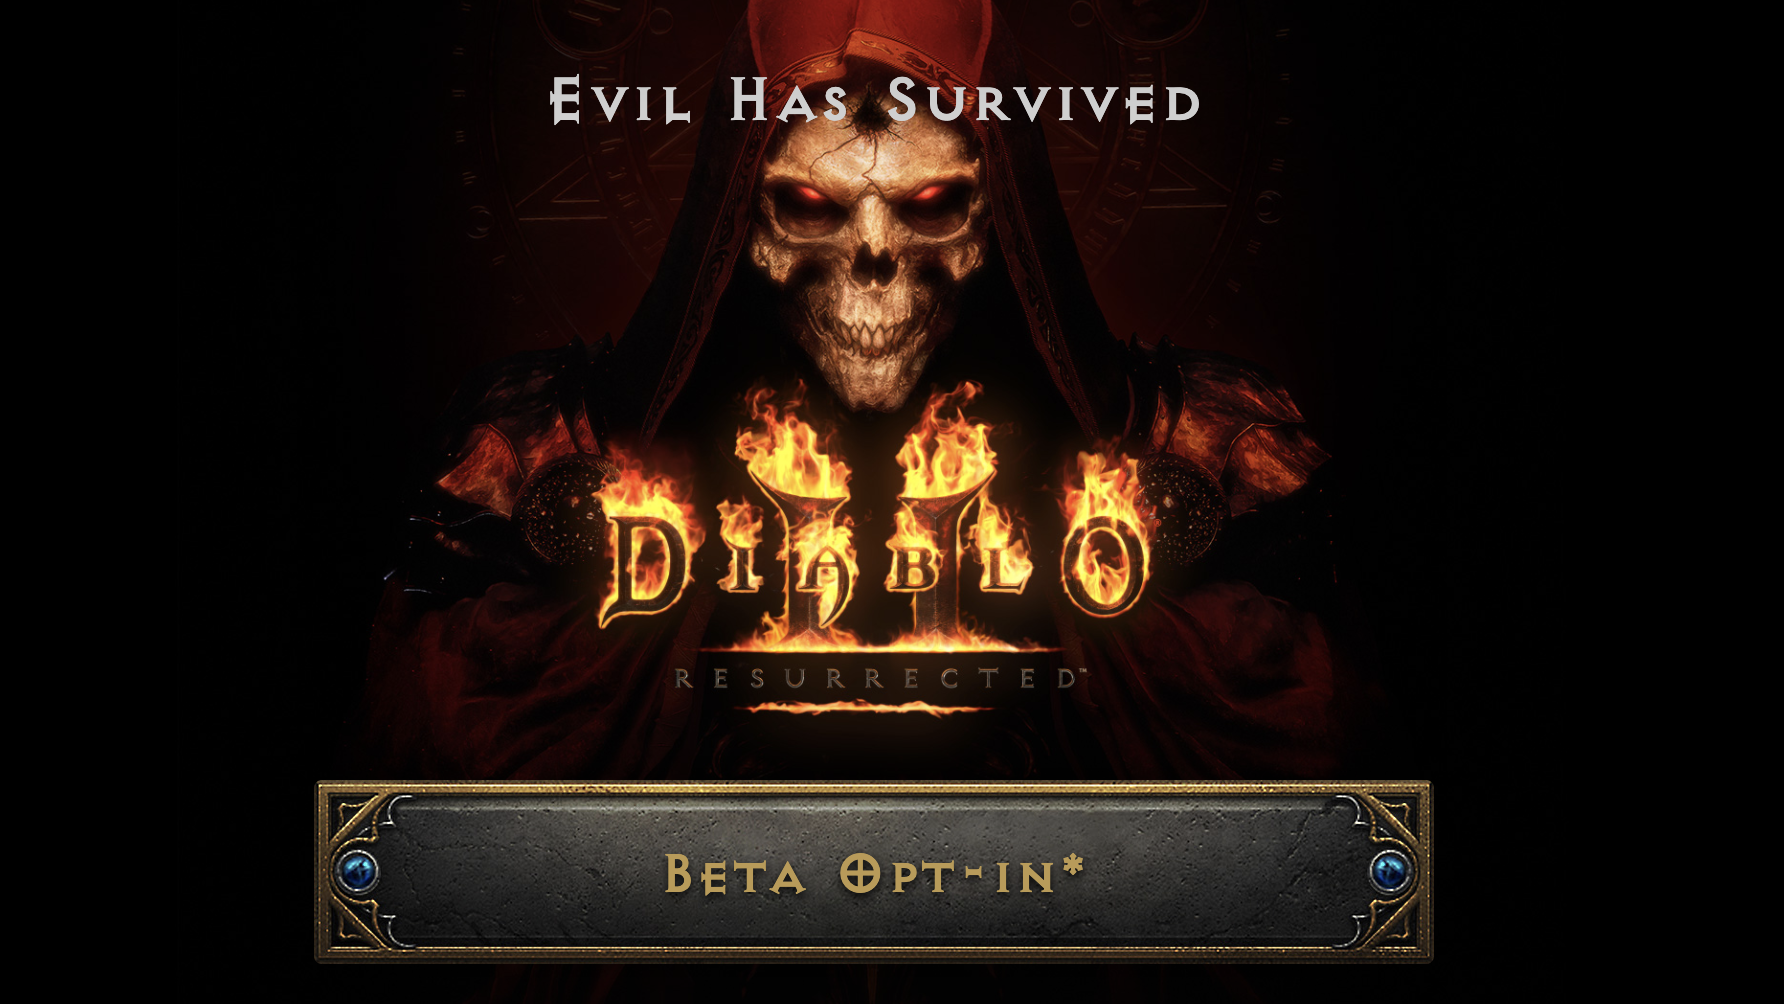 Diablo 2 Resurrected website screenshot for beta opt-in